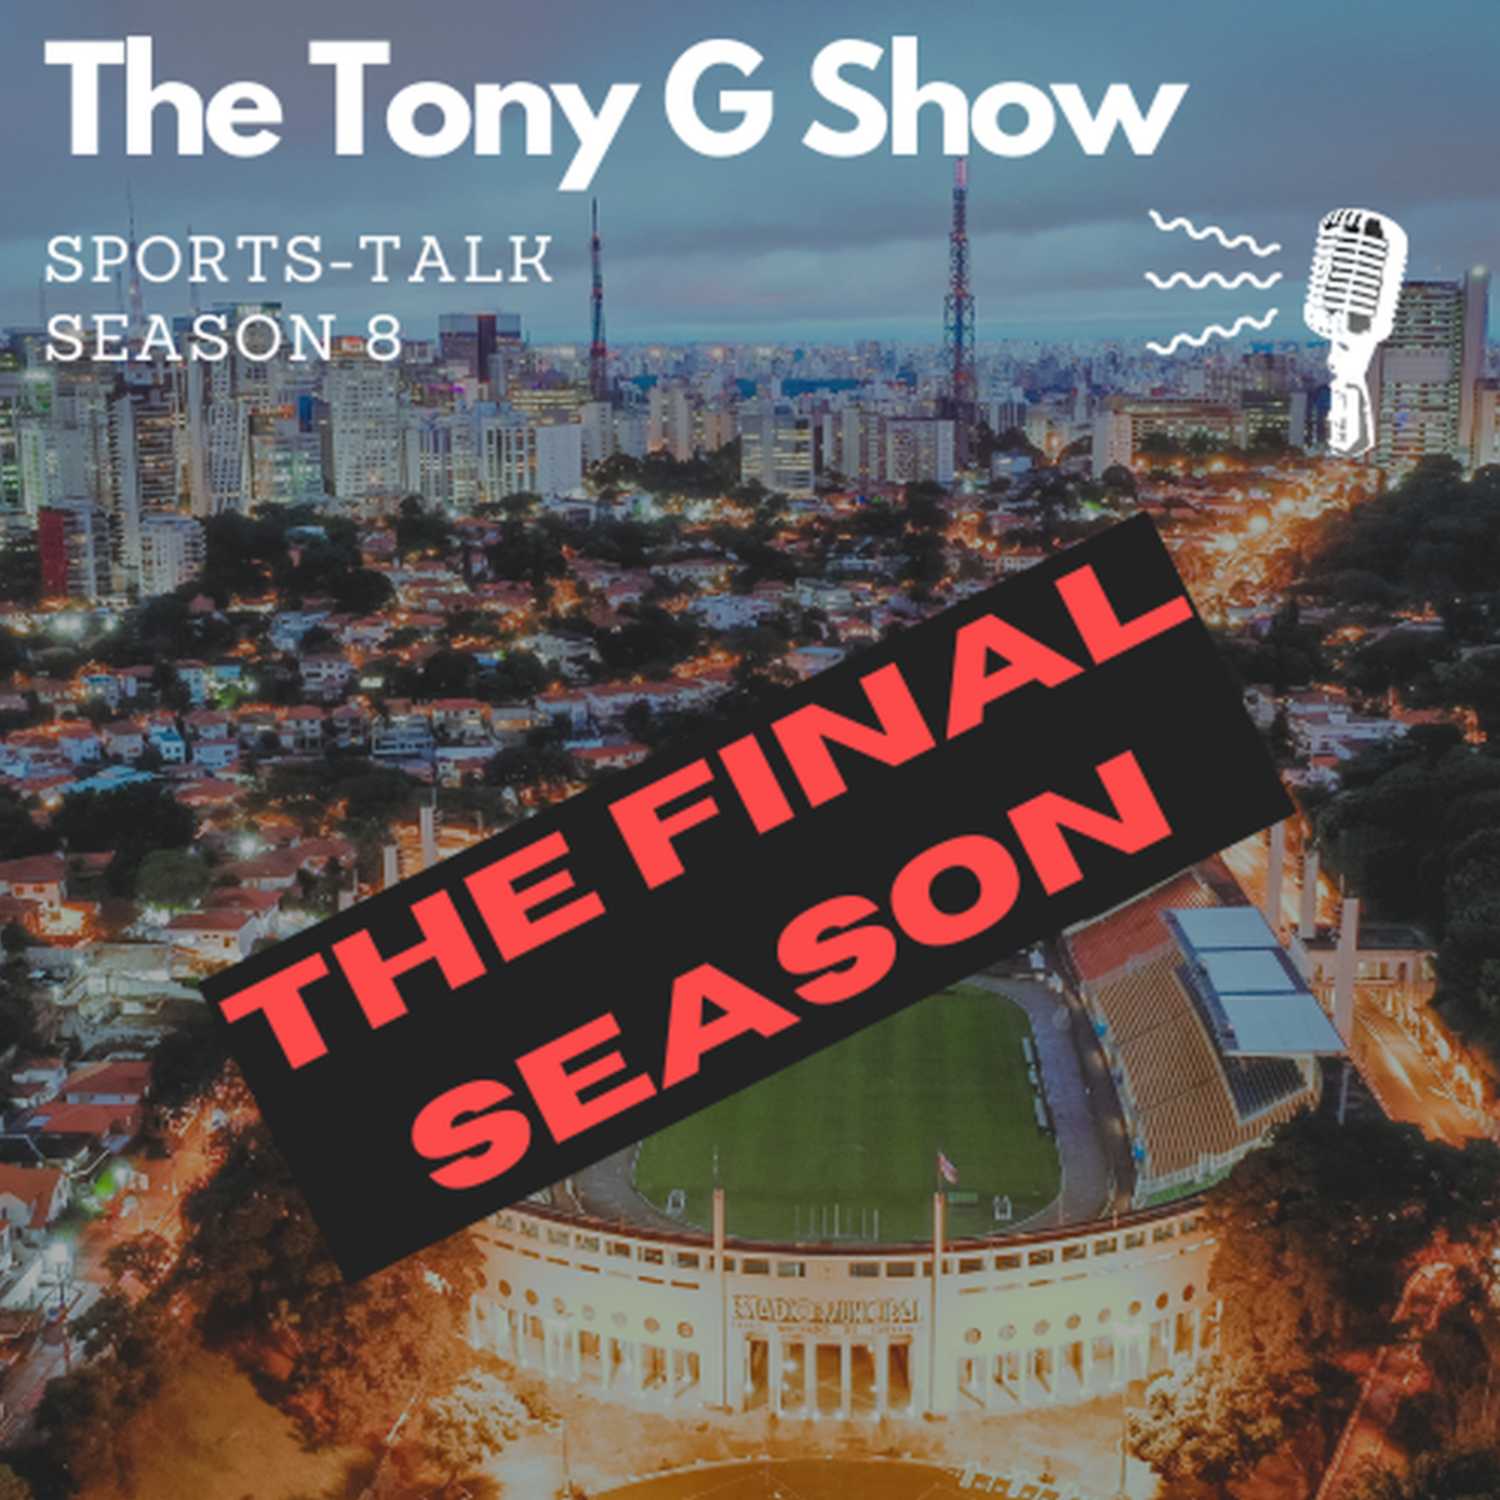 The Tony G Show